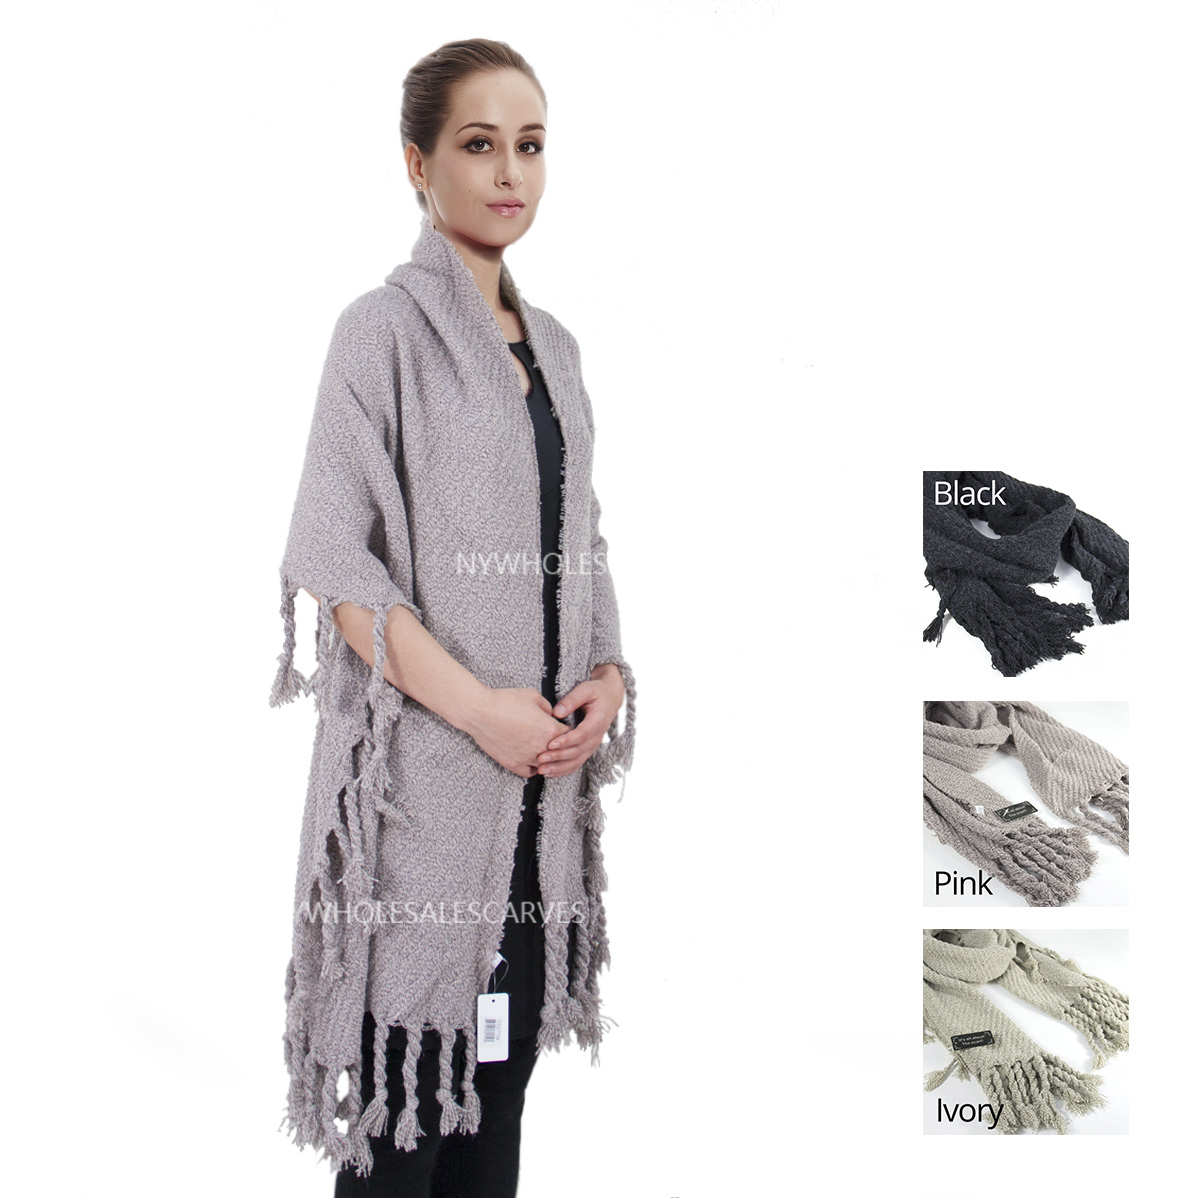 CG27104 Soft Long Fringe Shawl [CG27104] - $9.00 : Wholesale scarves ...